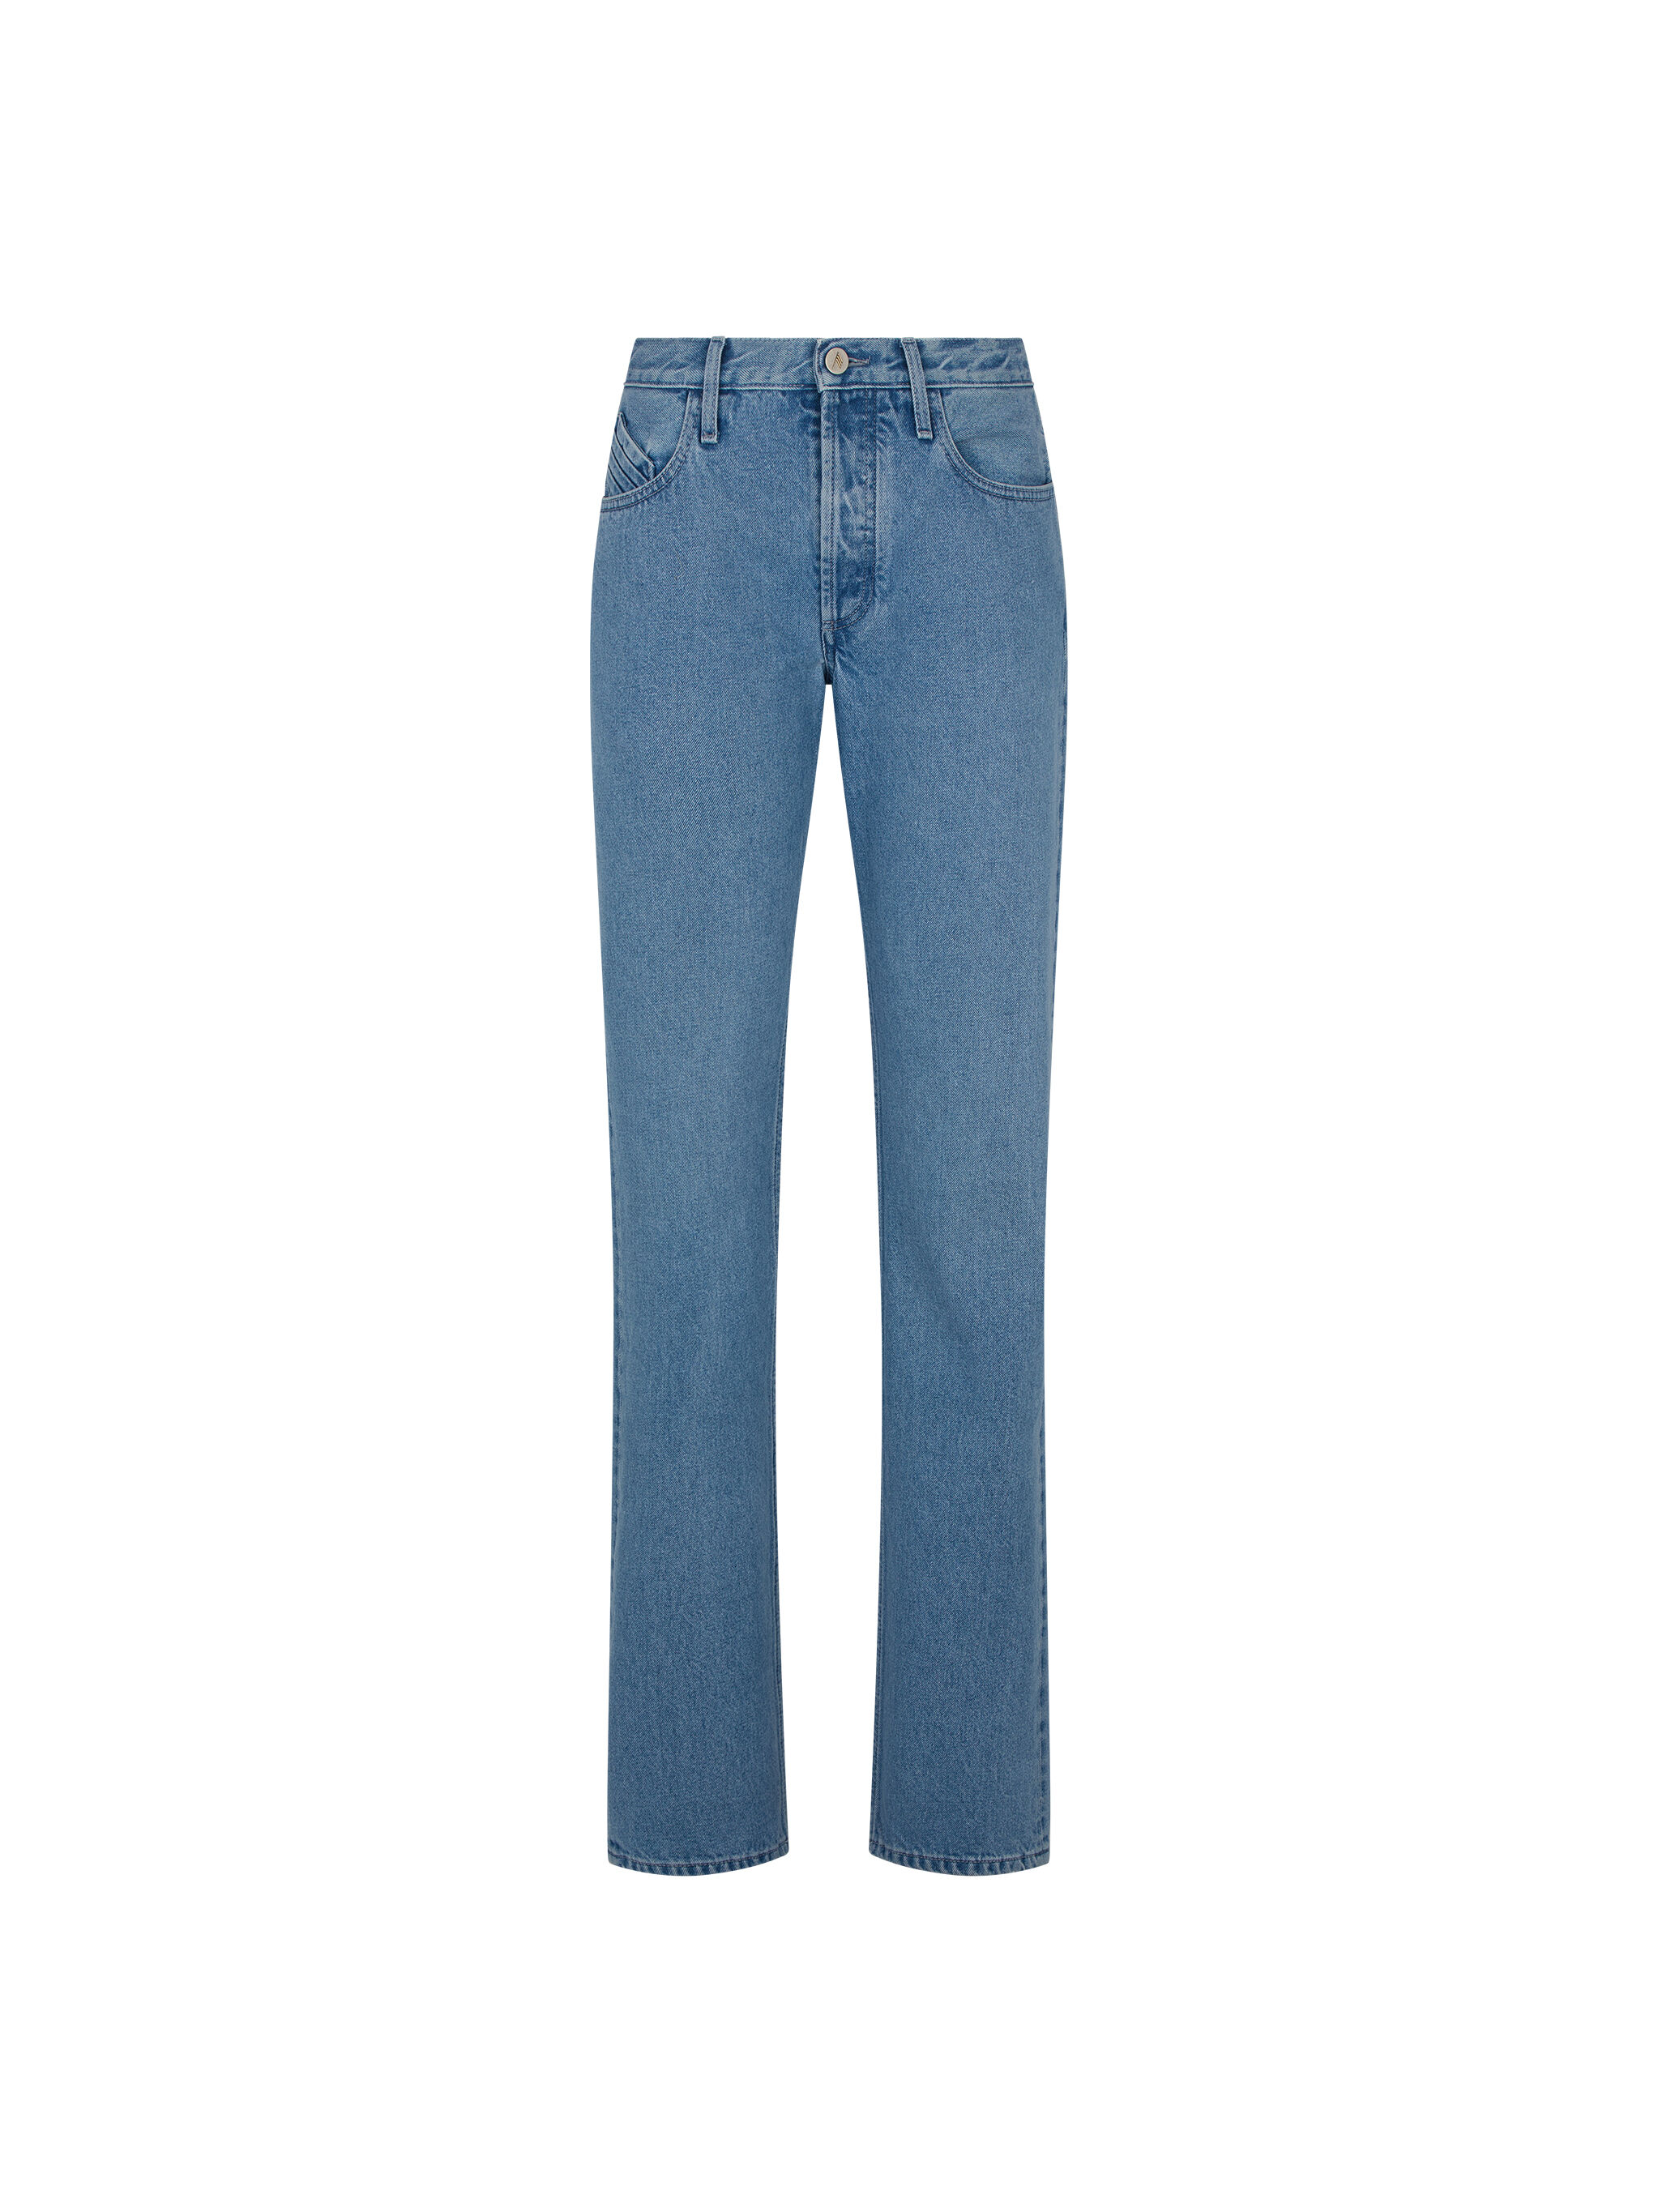 Damen Bekleidung Jeans Ausgestellte Jeans The Attico Denim High-Rise Flared Jeans in Schwarz 